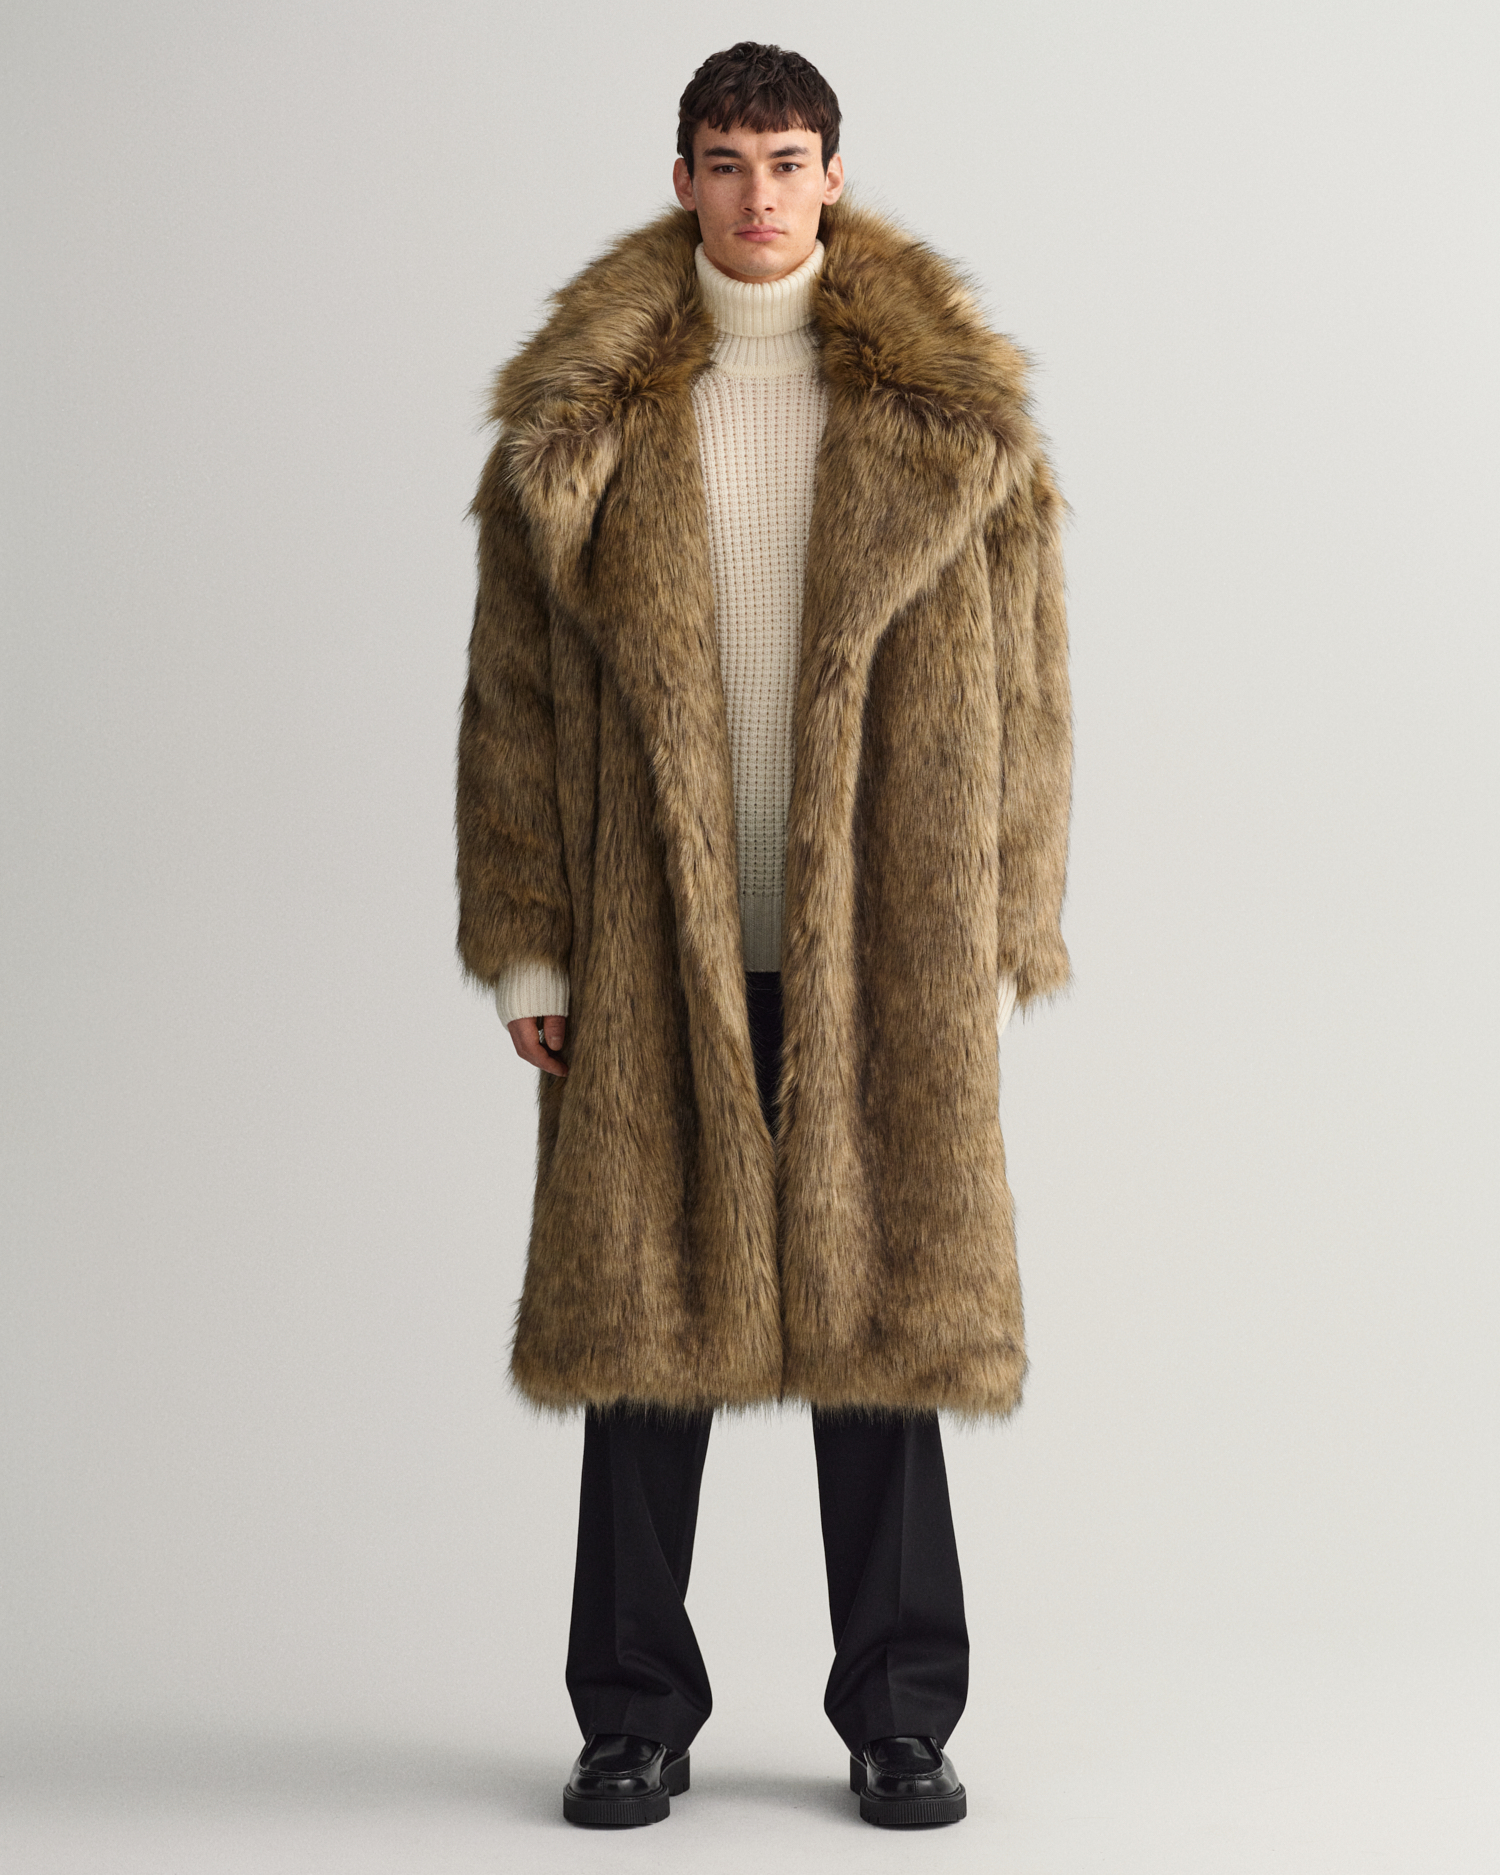 Fur Jacket - Buy Fur Jacket online in India